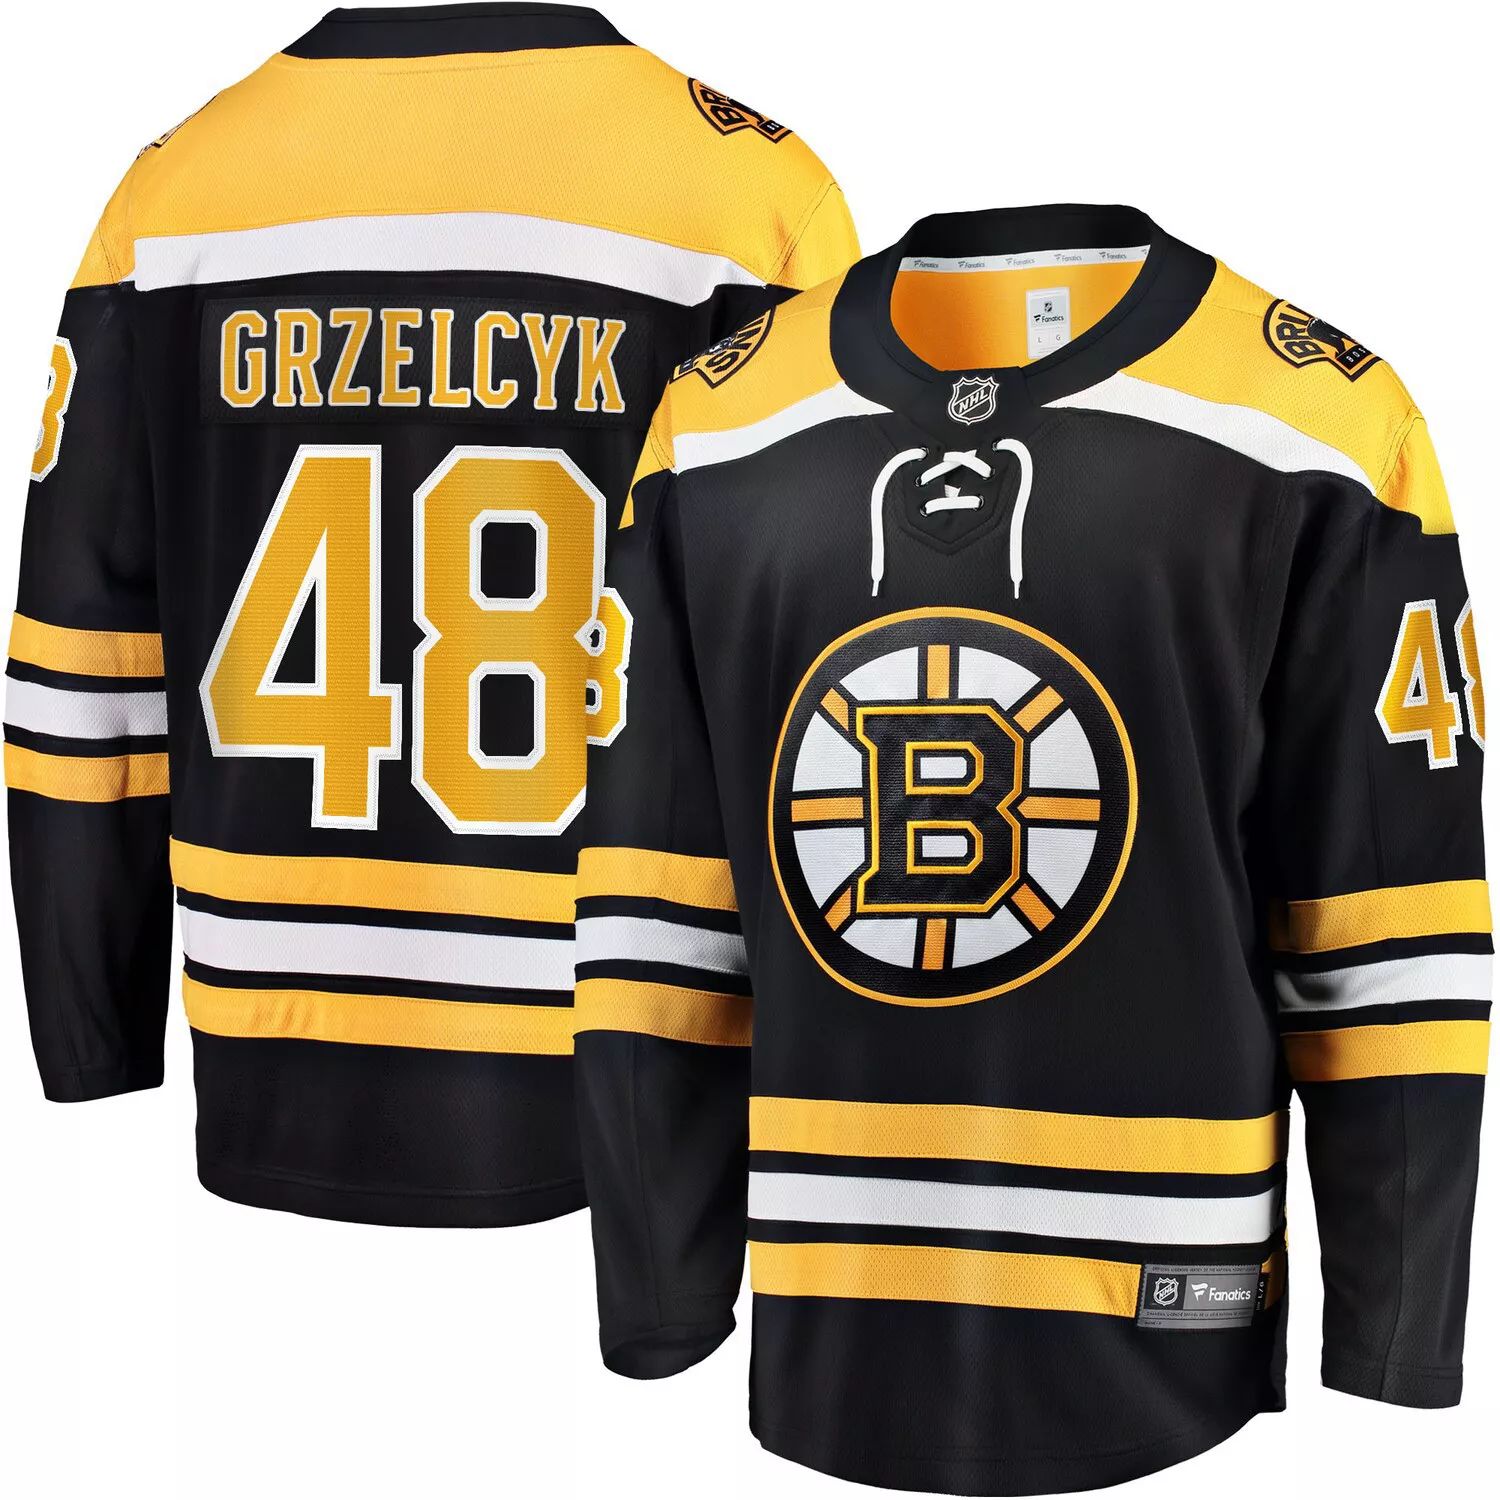 Мужская черная футболка с логотипом Matt Grzelcyk, команда Boston Bruins Team, отколовшаяся от дома команда Fanatics